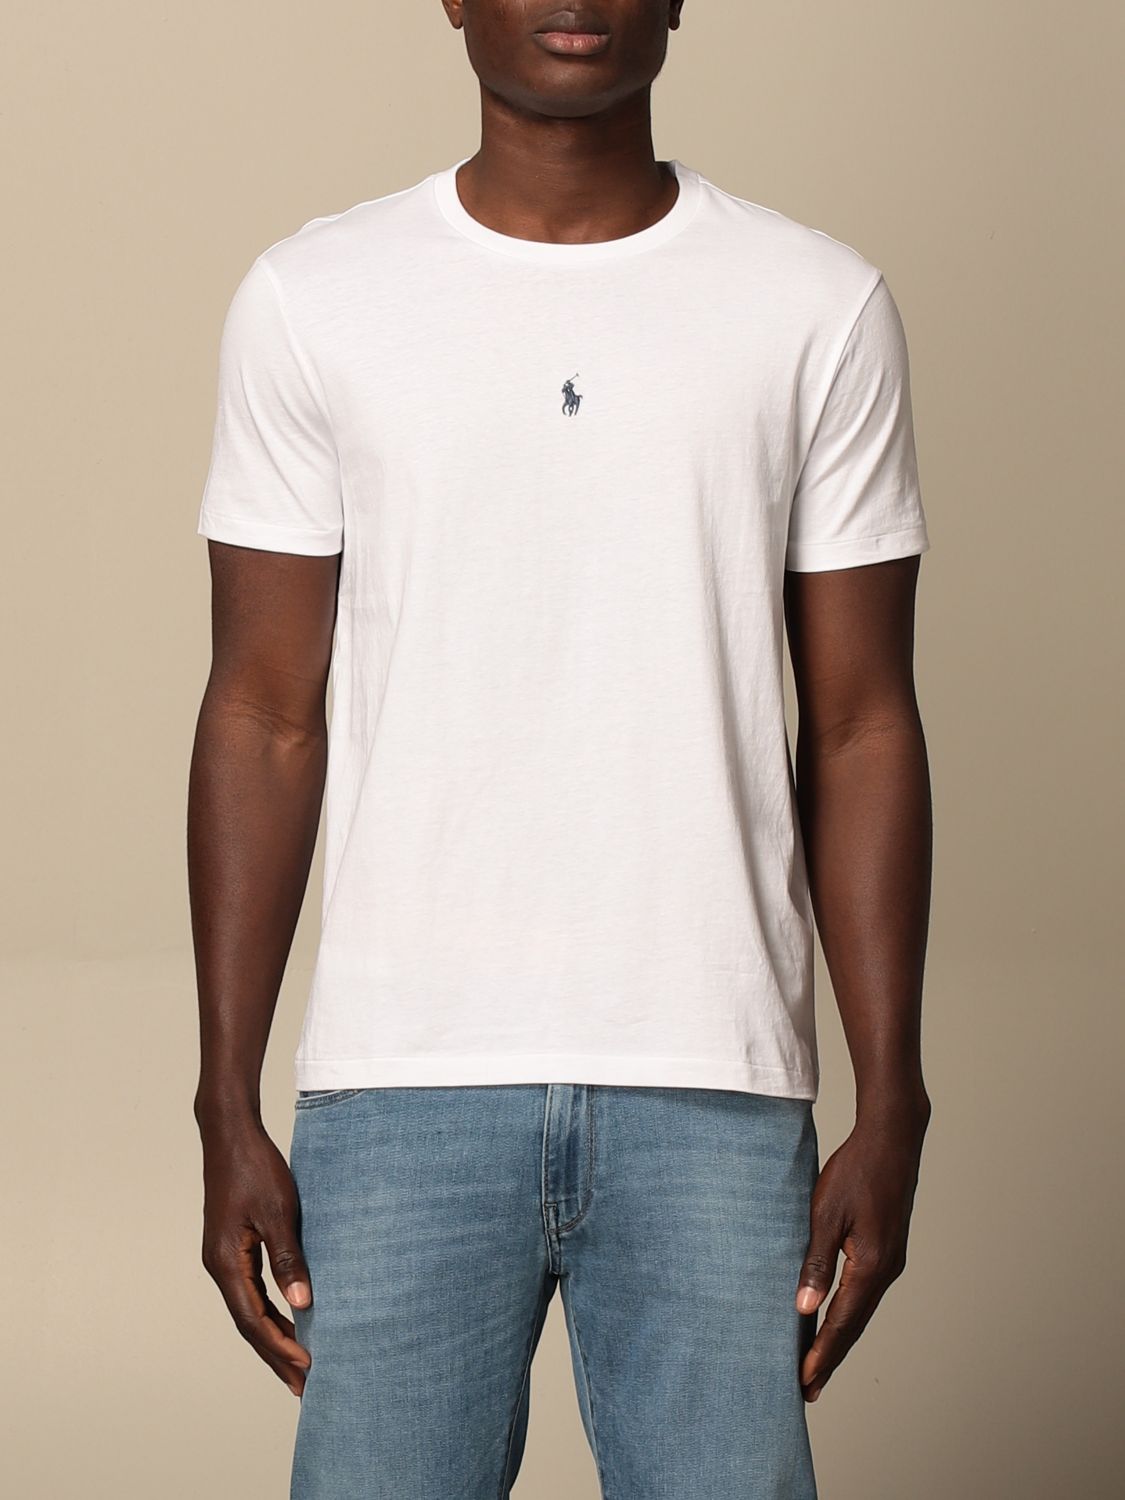 Polo Ralph Lauren Outlet: basic logo t-shirt - White | Polo Ralph Lauren t- shirt 710839046 online on 